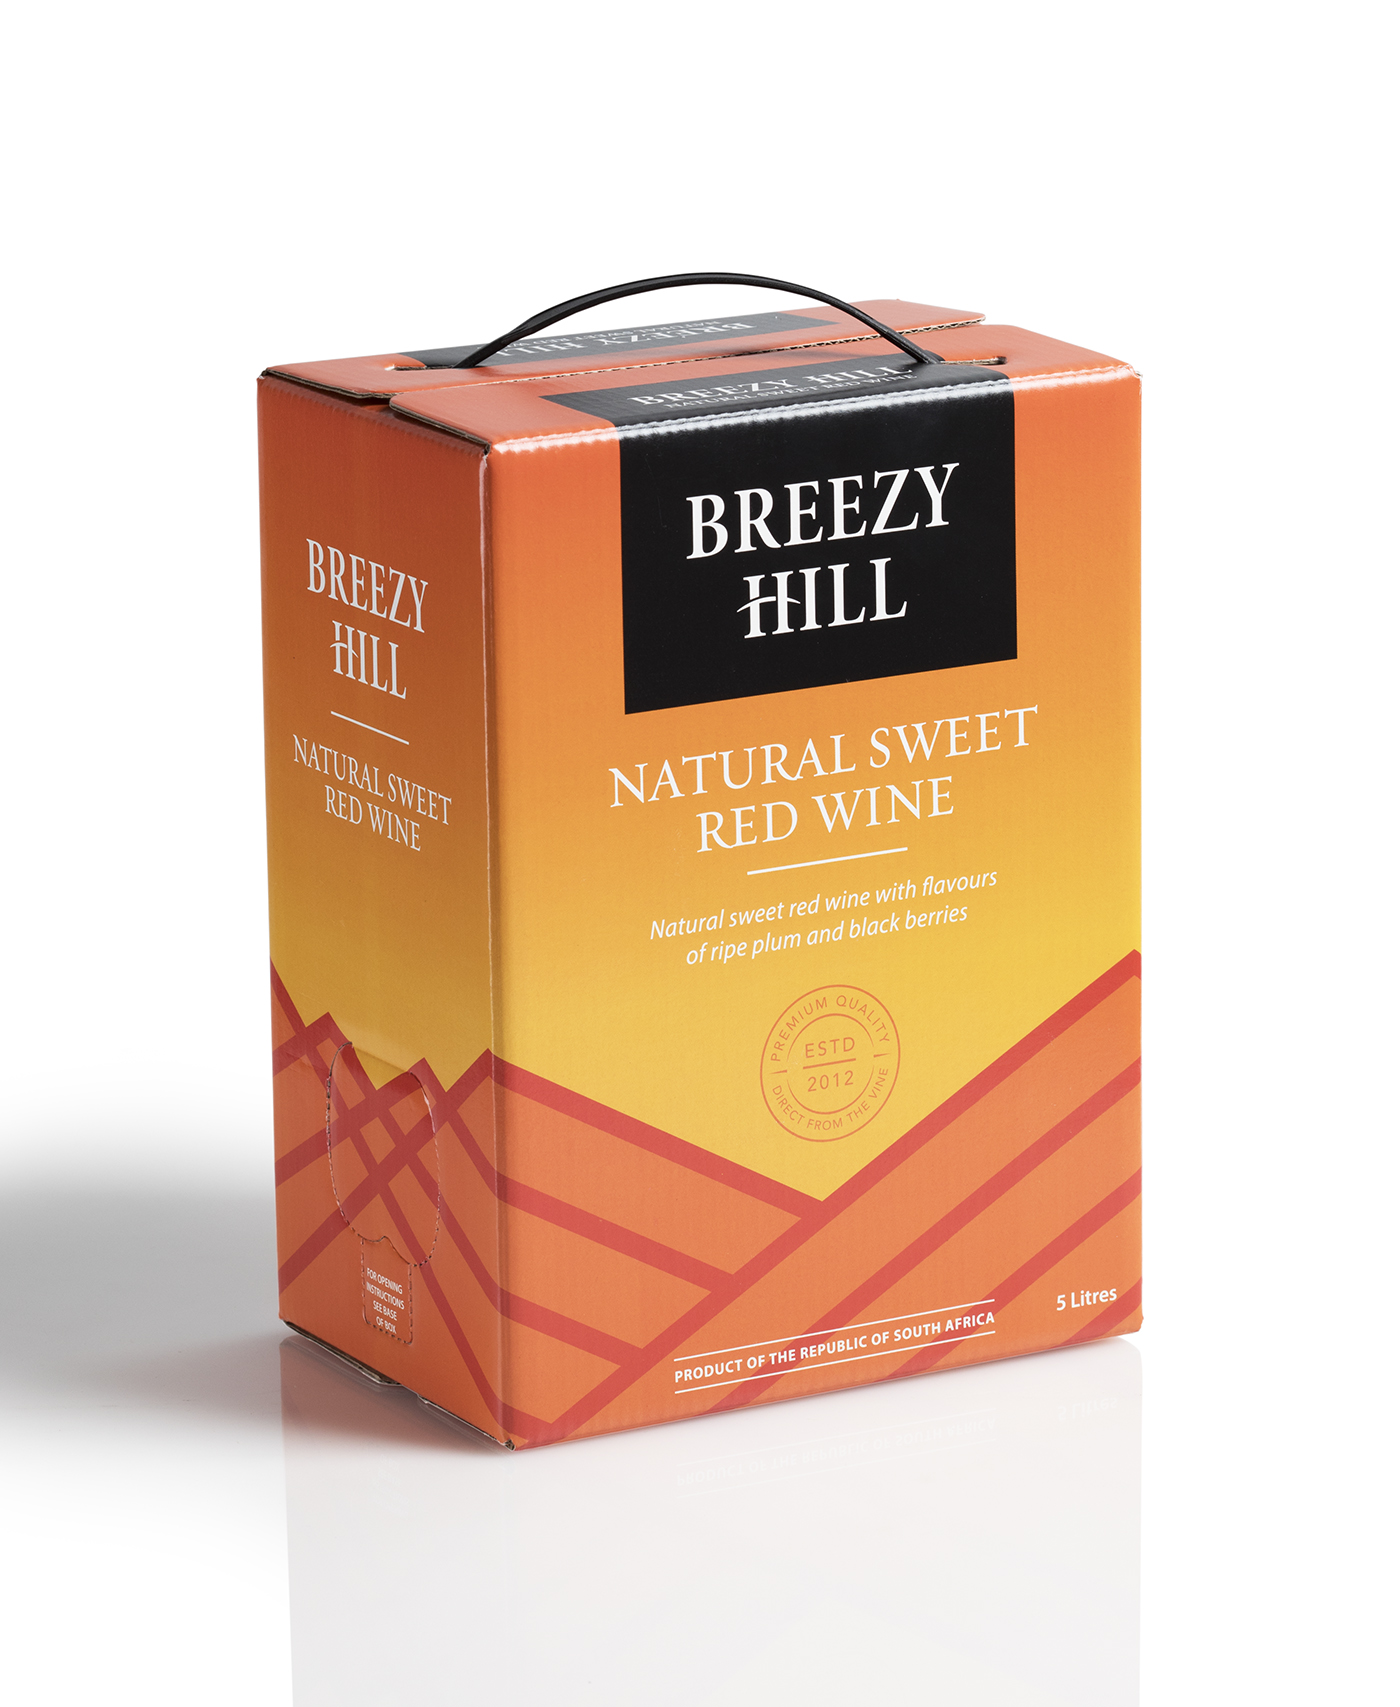 MARK-BREEZY HILL BOX WINES